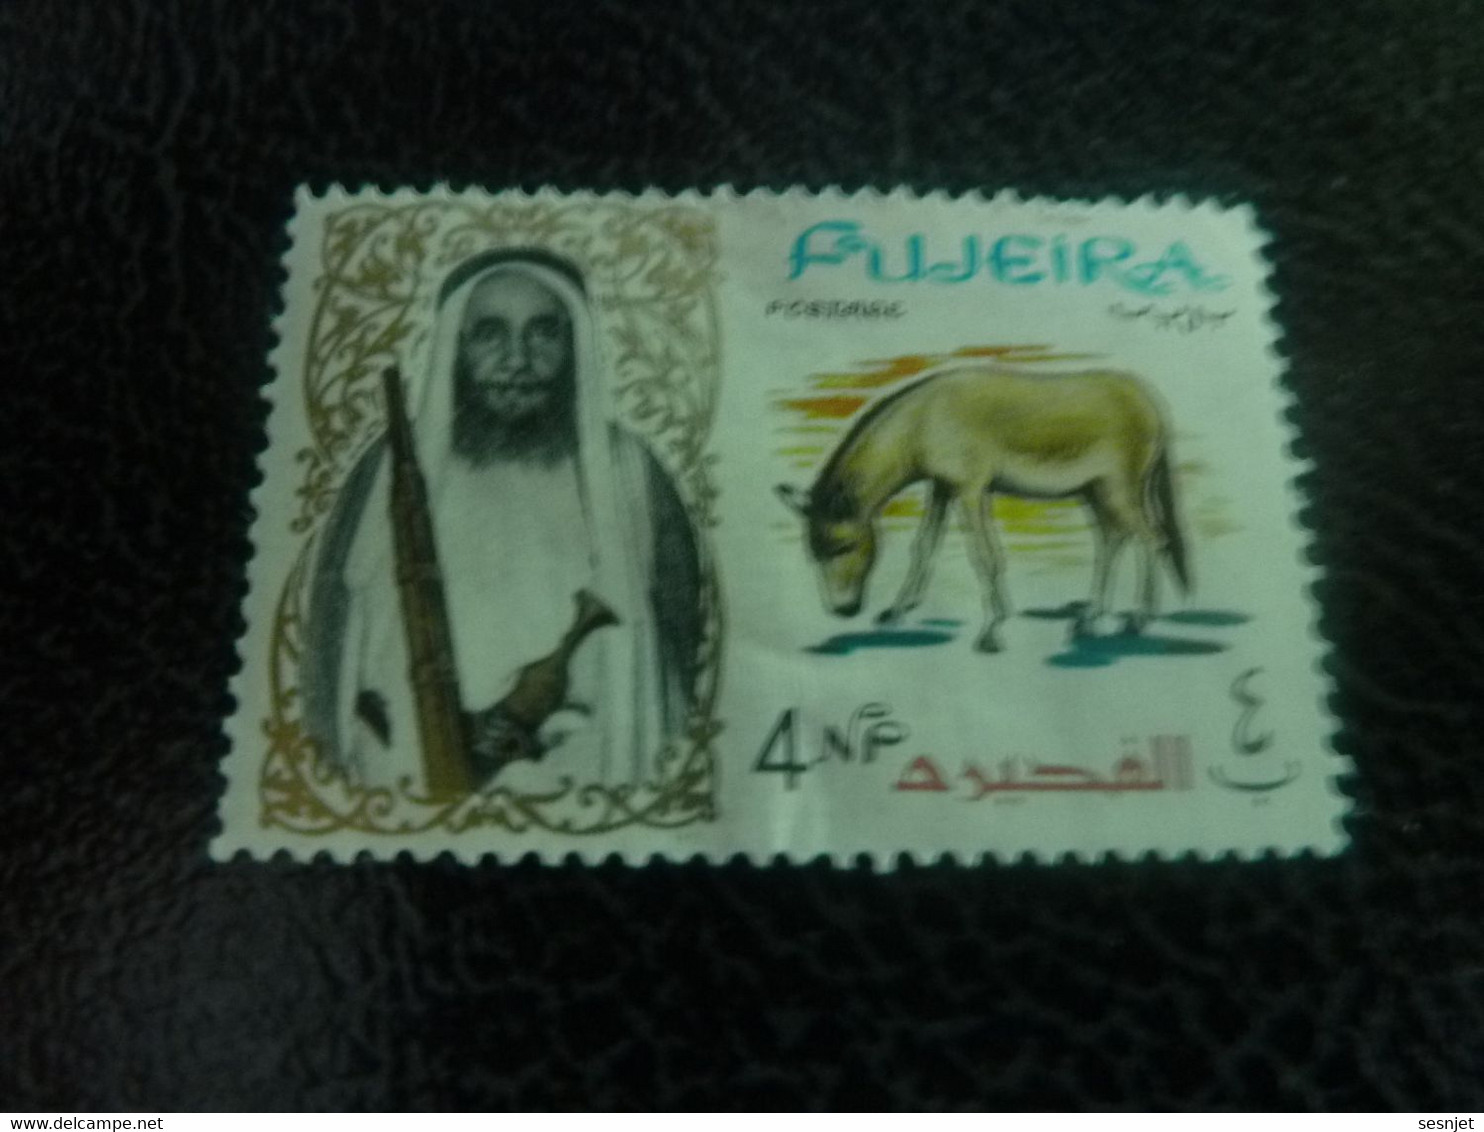 Fujeira - Sultan - Mule - Val 4 Np - Postage - Multicolore - Non Oblitéré - Année 1965 - - Esel